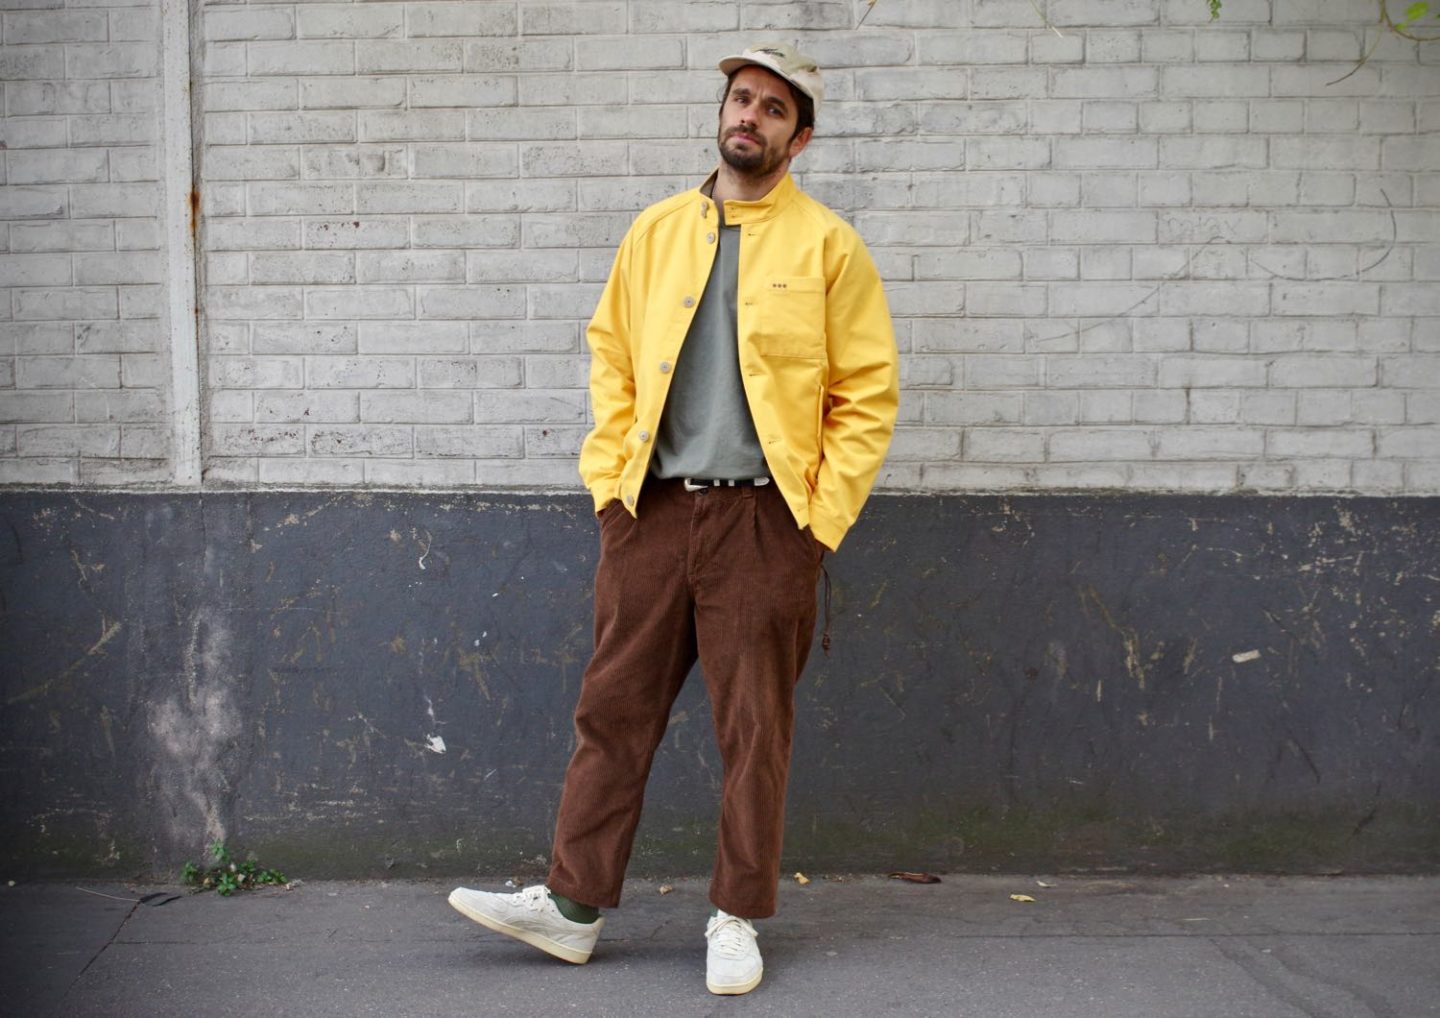 conseil mode homme pour porter du marron et du jaune dans un look street heritage